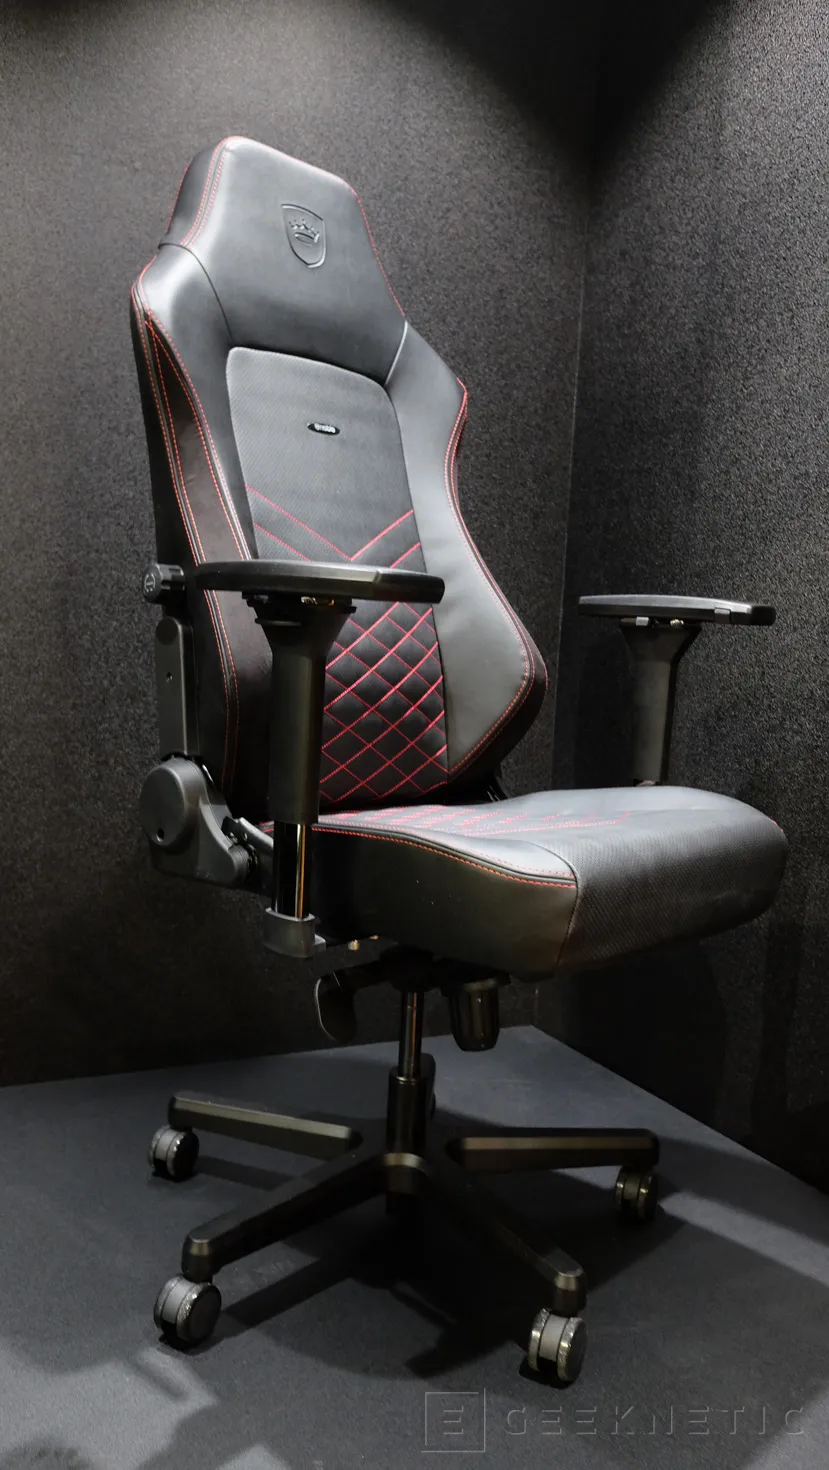 Geeknetic Diseño gaming y materiales de alta calidad en la nueva silla noblechairs Hero 3